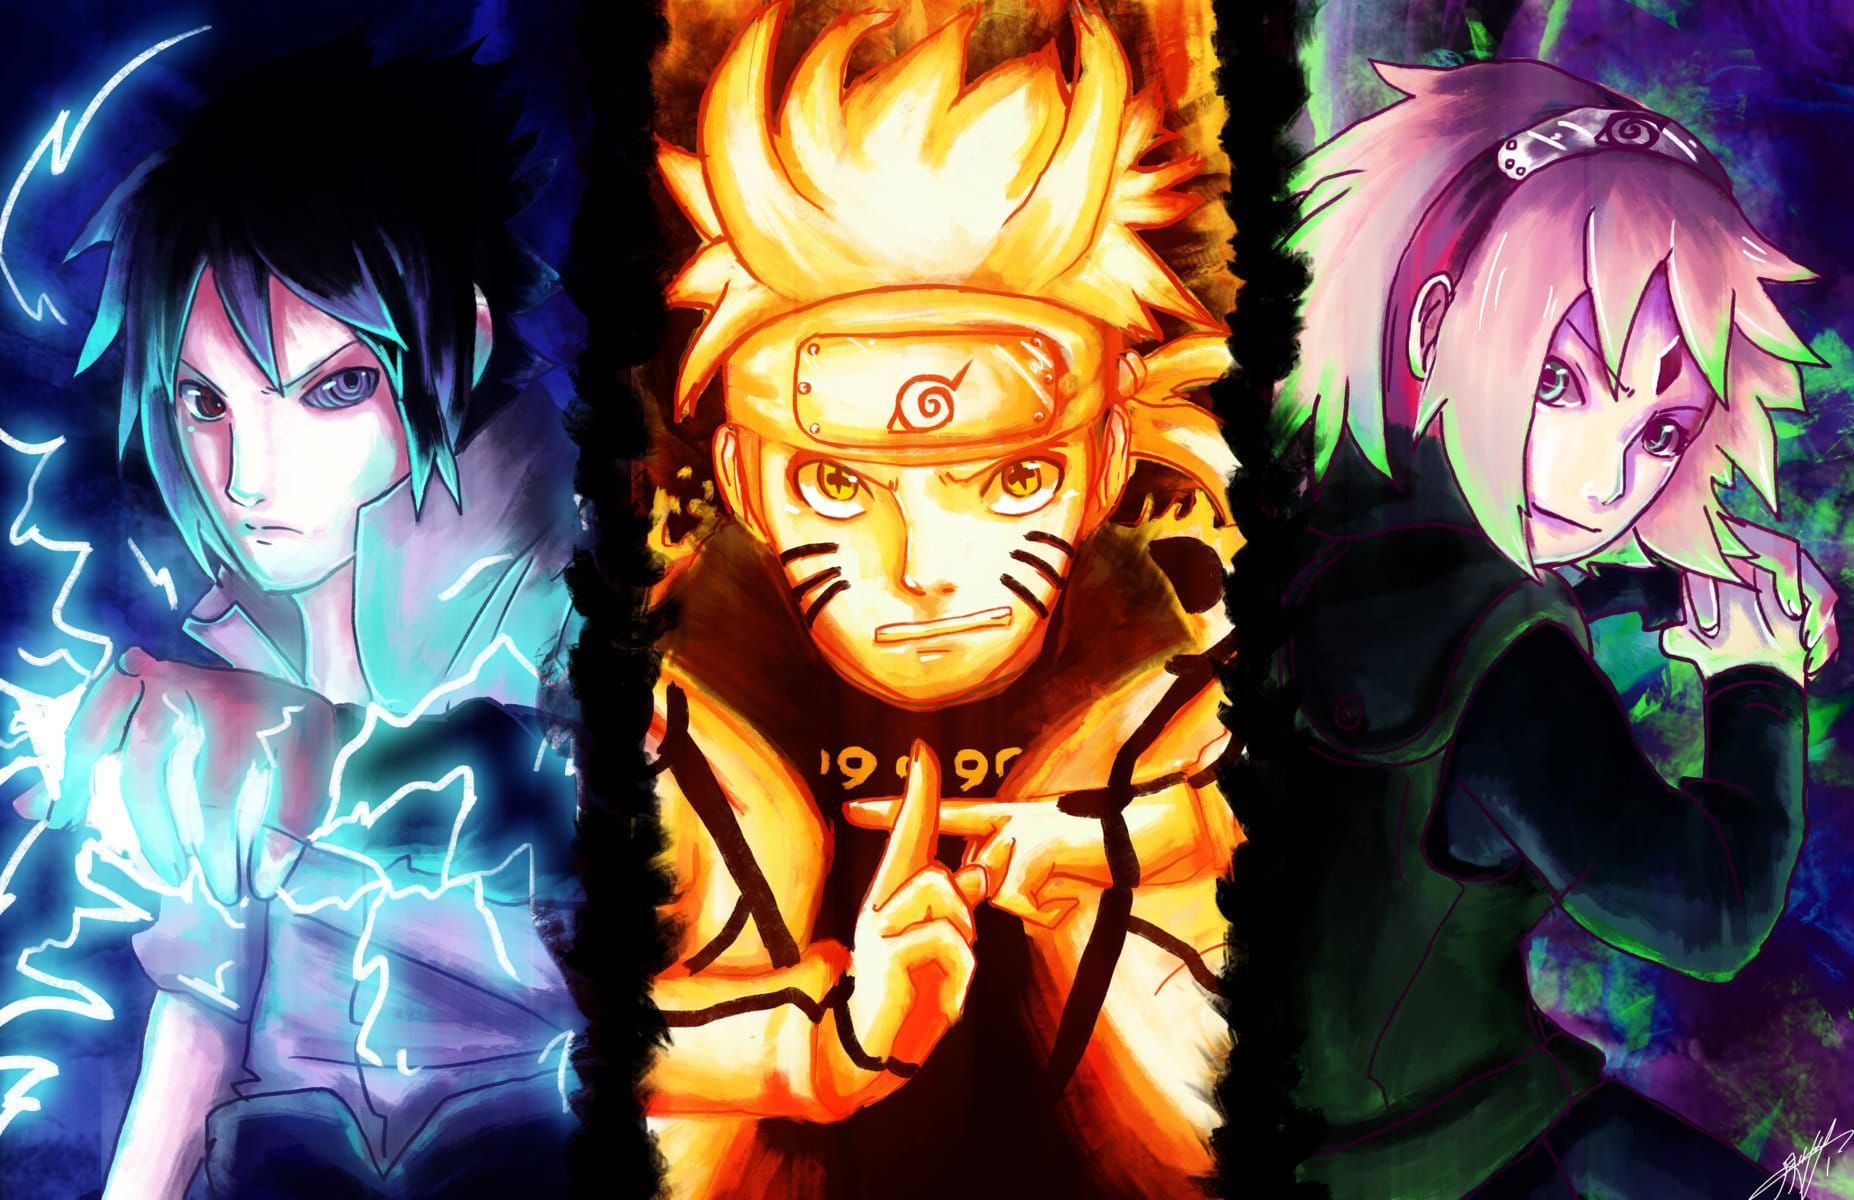 Thoả sức thử thách bản thân với game Naruto lục đạo đầy tính năng hấp dẫn từ một thế giới hư cấu. Hãy cùng tham gia vào cộng đồng game thủ Naruto và trở thành chiến binh cao thủ nhất!